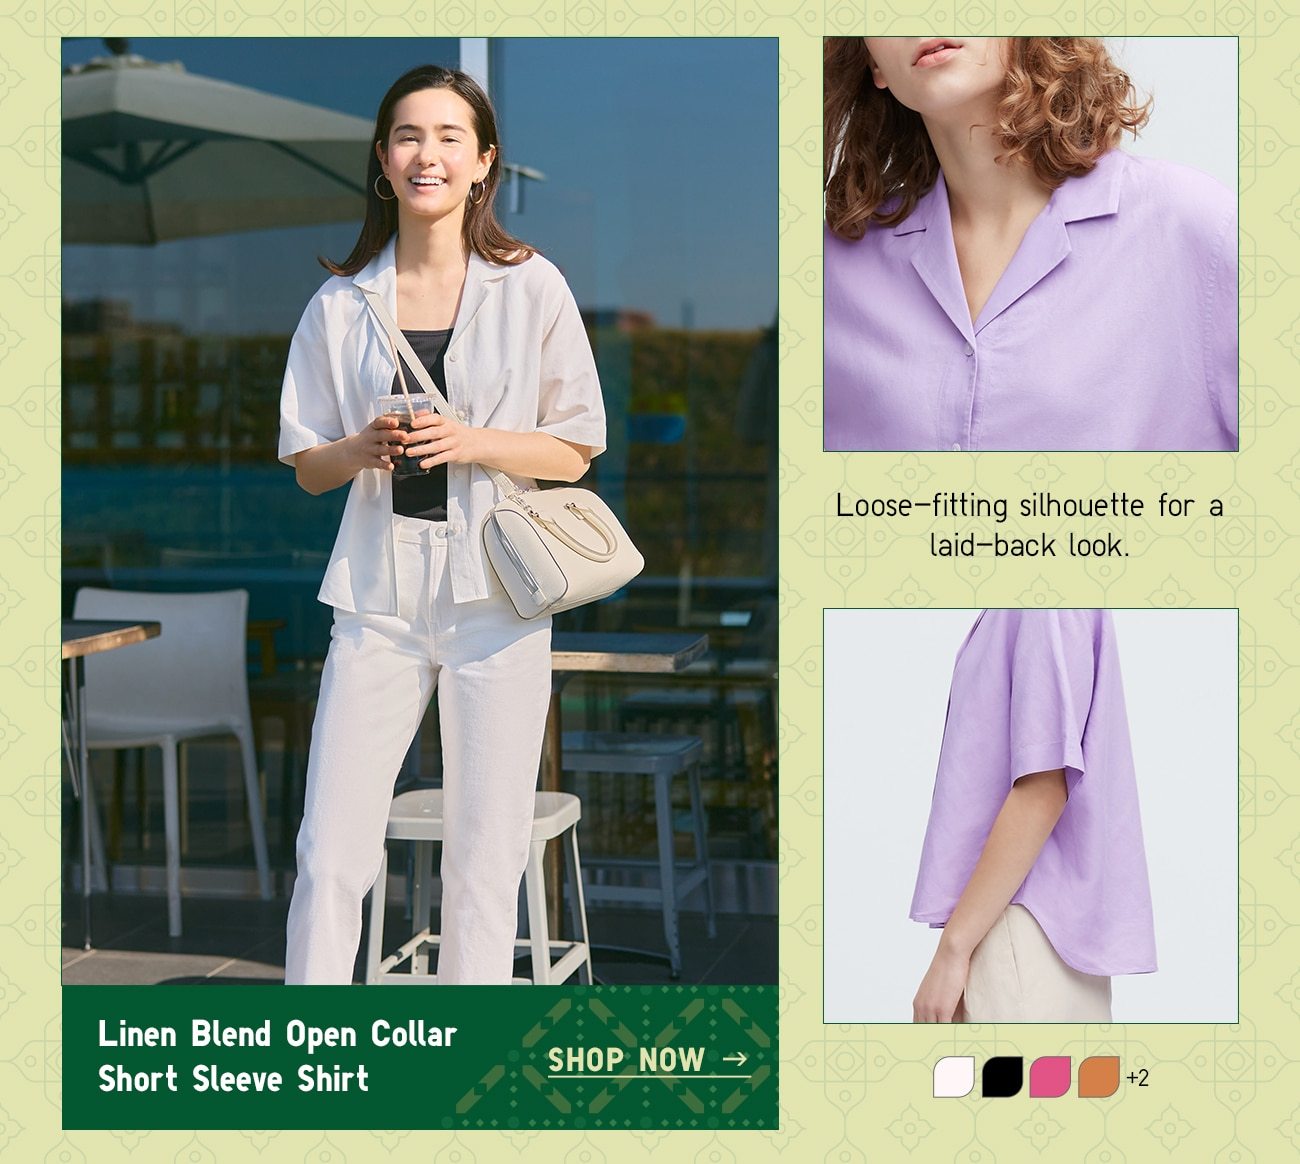 Linen Blend Open Collar Short Sleeve Shirt